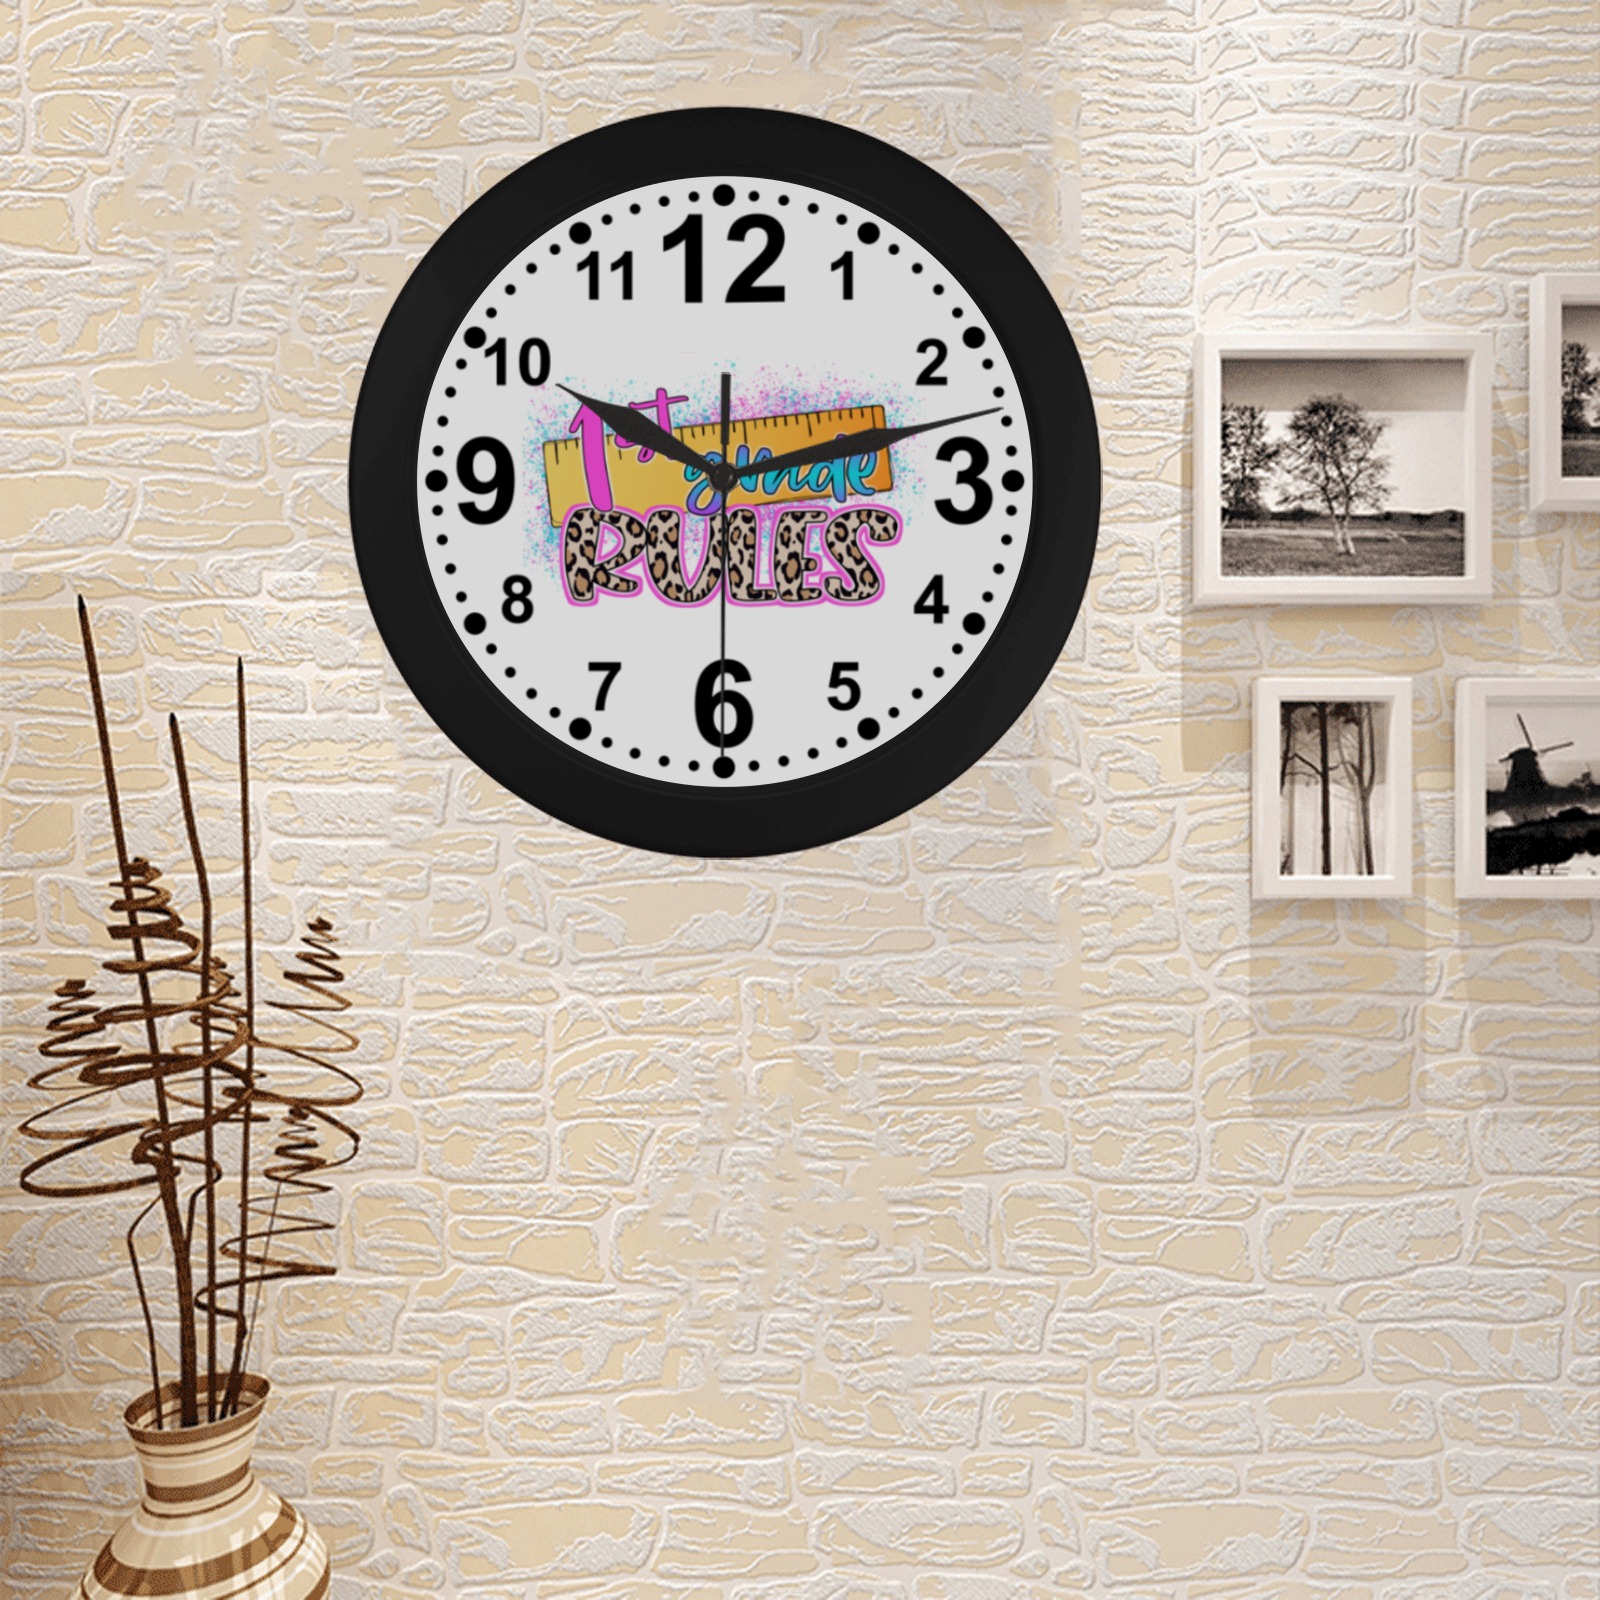 1st Grade Rules Circular Plastic Wall clock